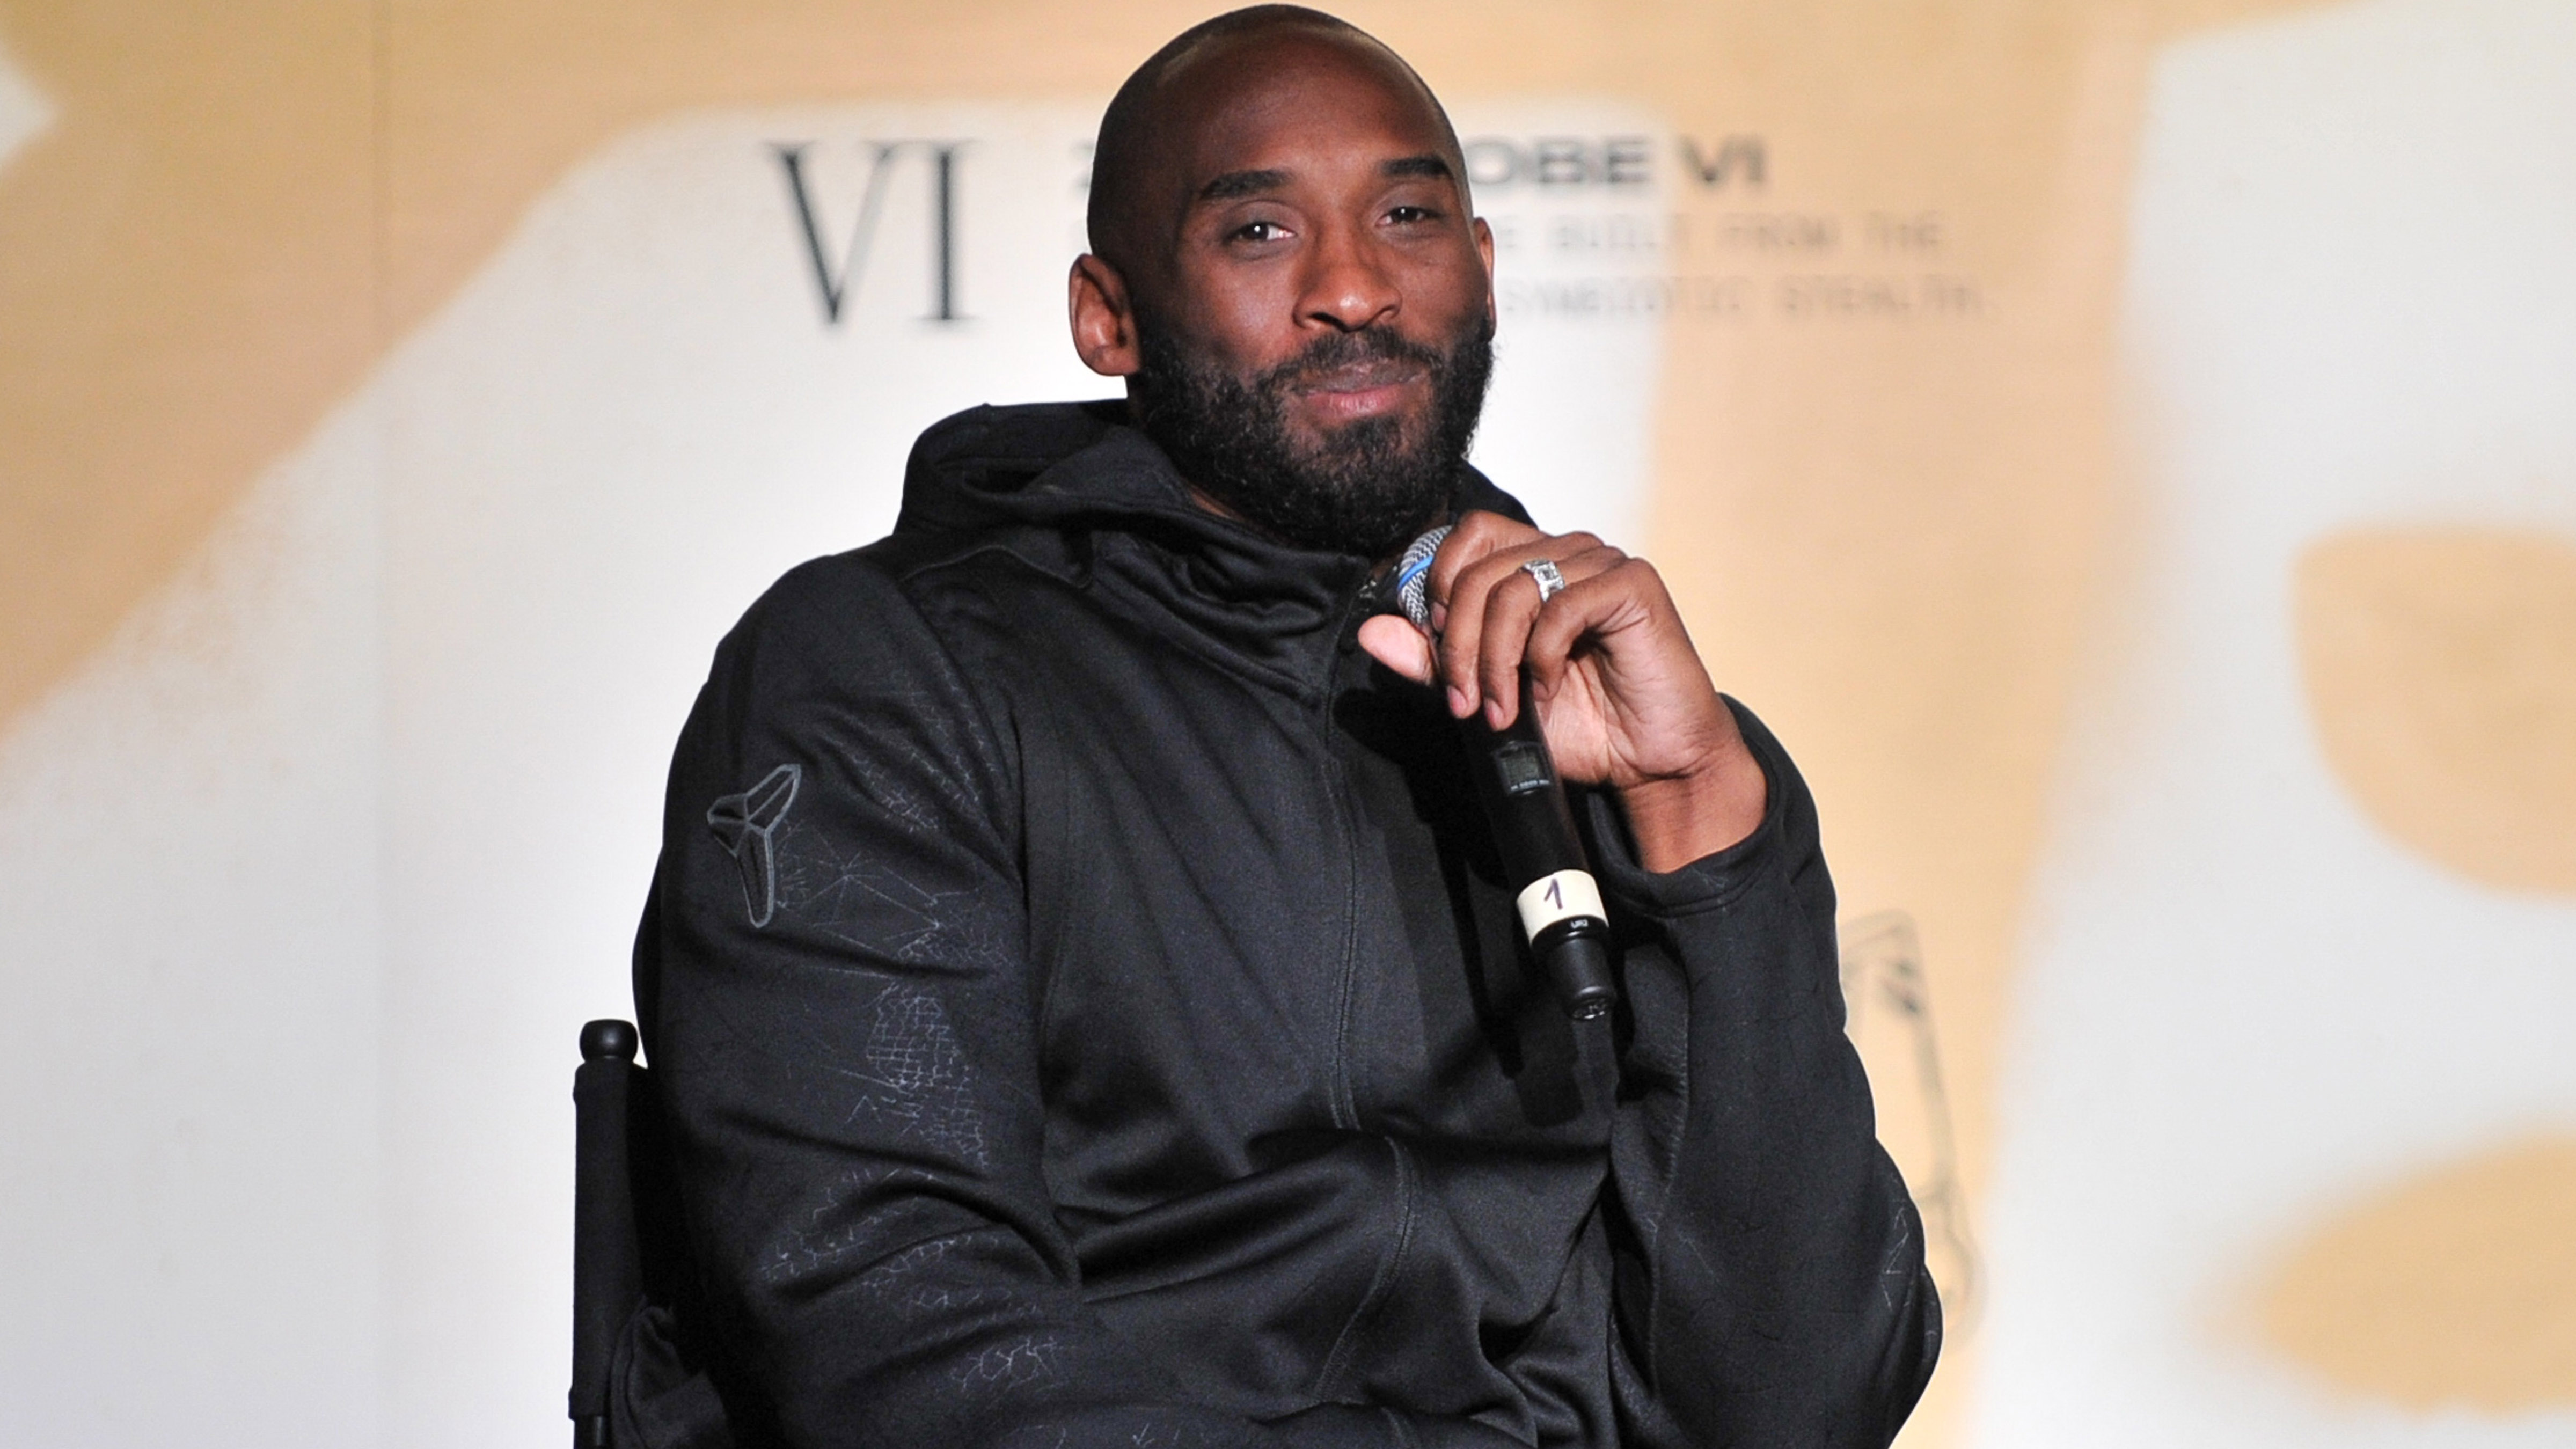 Nike honors the late Kobe Bryant at New York Fashion Week show